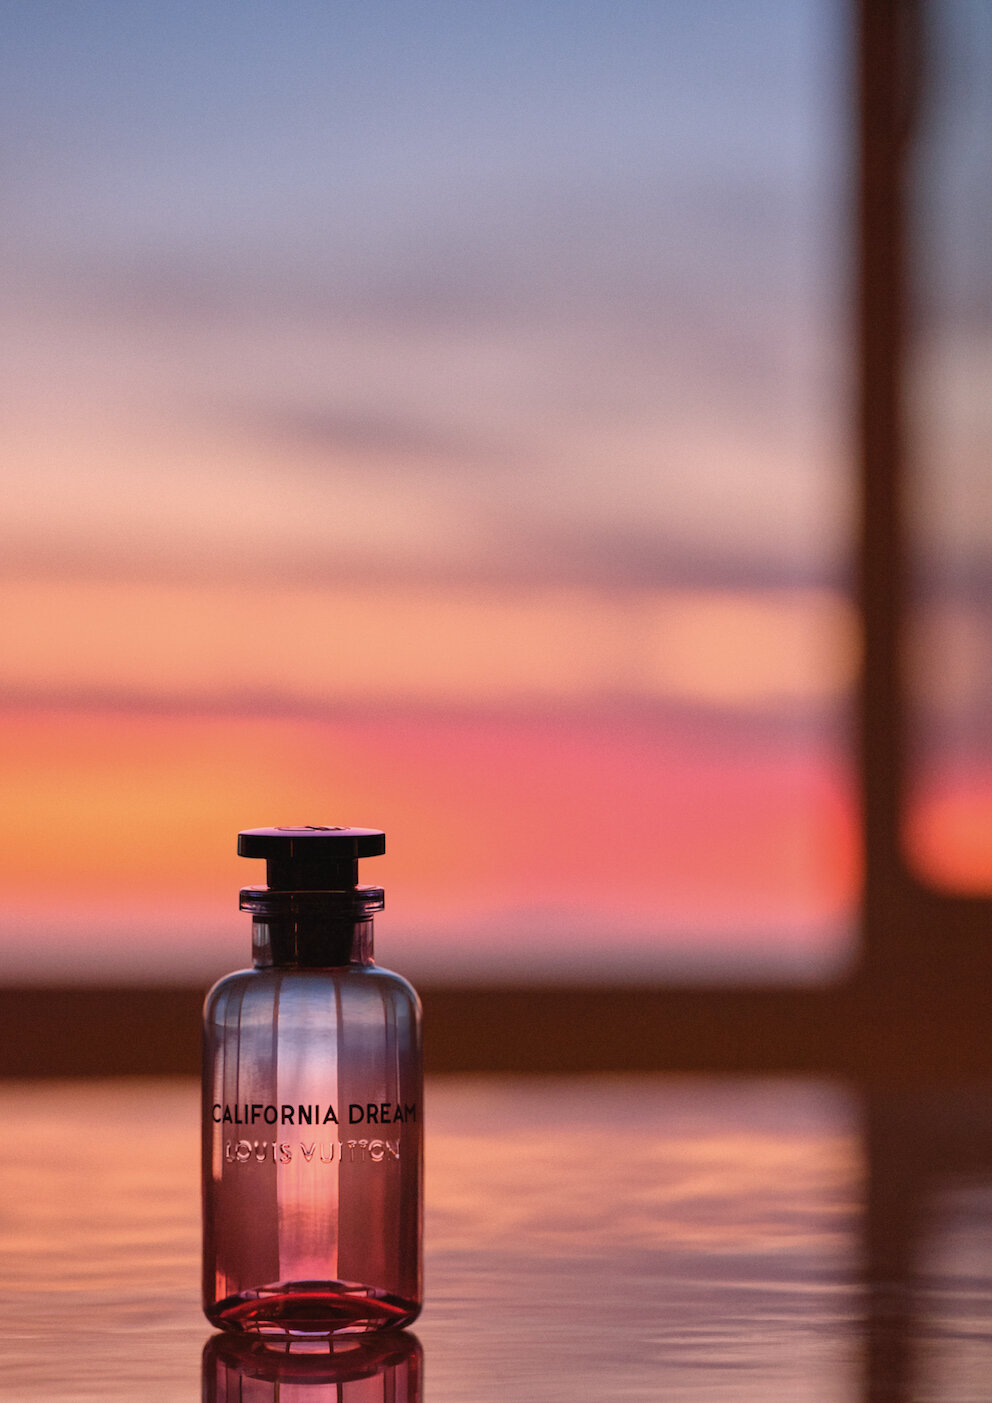 Louis Vuitton Launches California Dream Fragrance